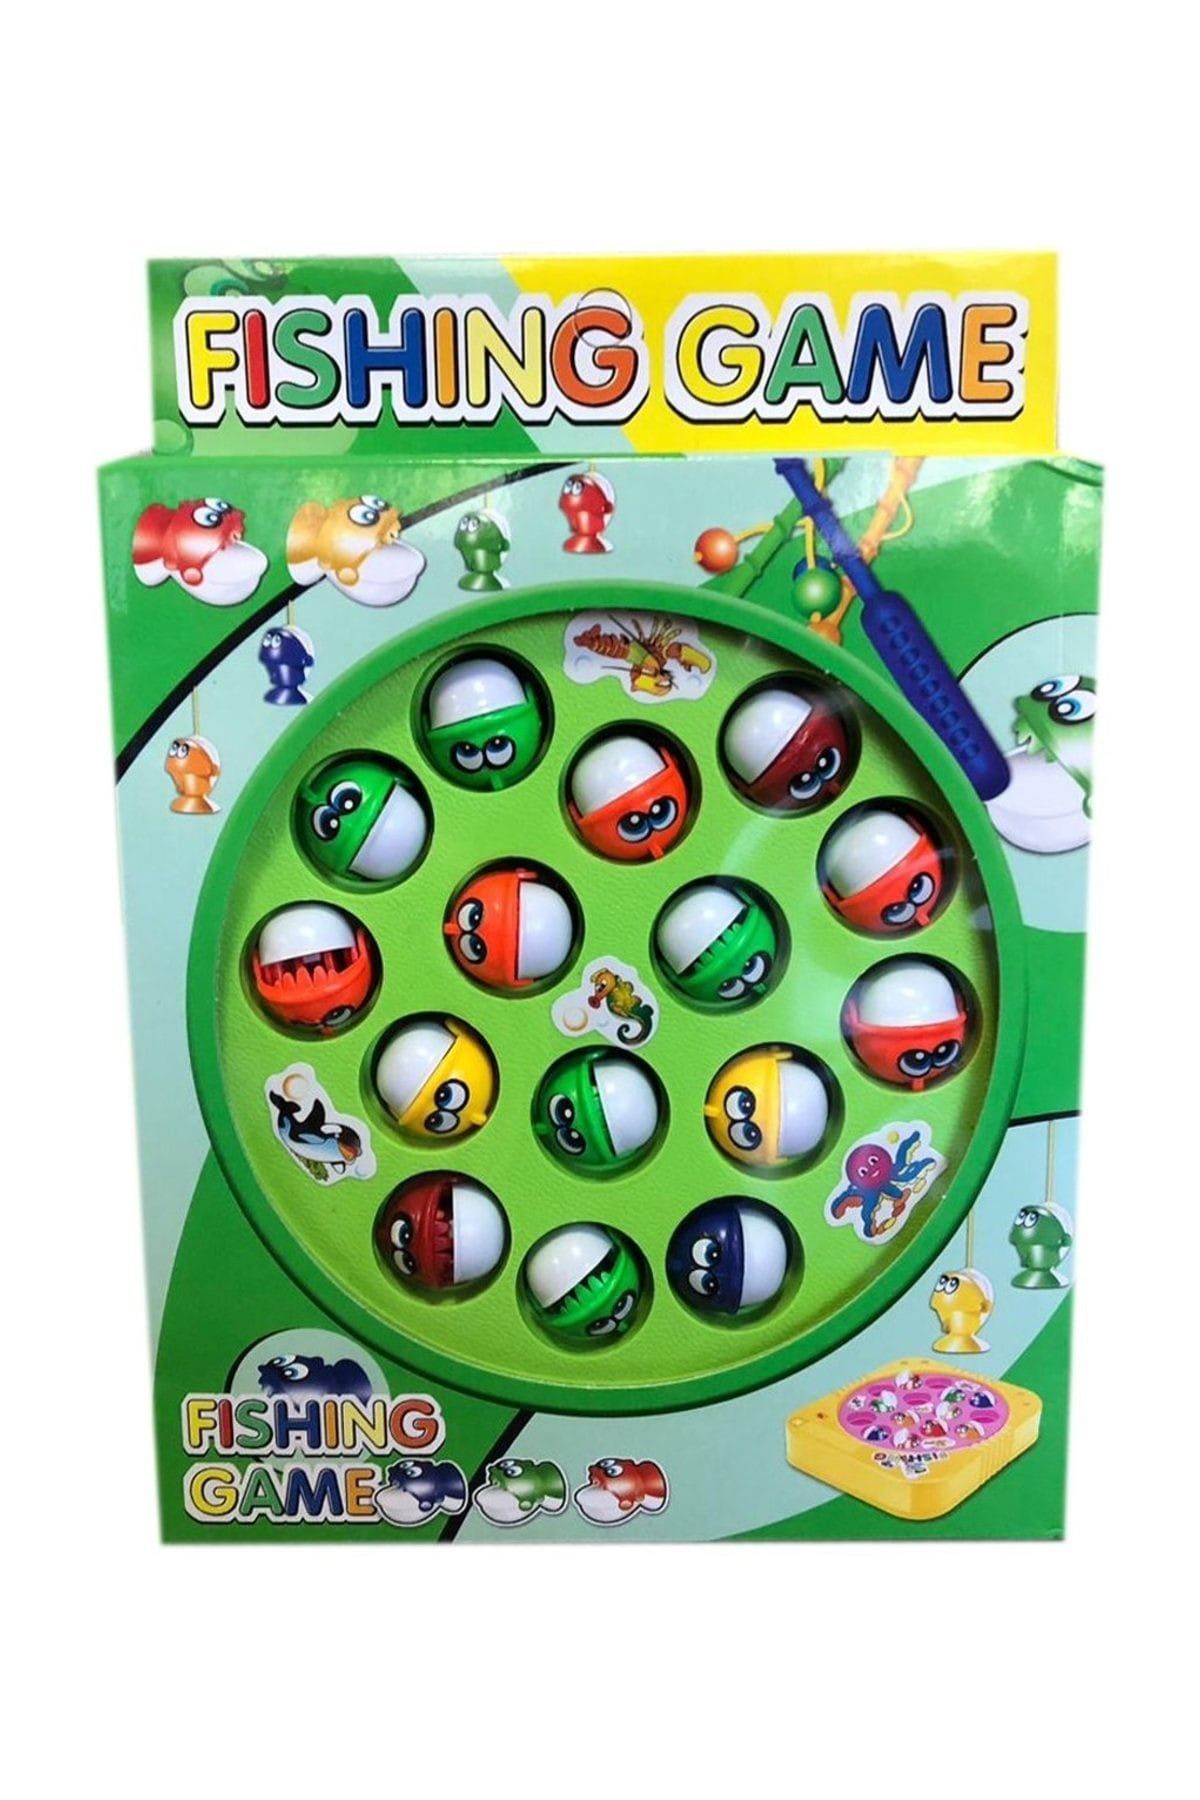 RoseRoi 15 Li Balık Yakalama Eğitici Oyuncak Fishing Game Balık Tutma Oyunu